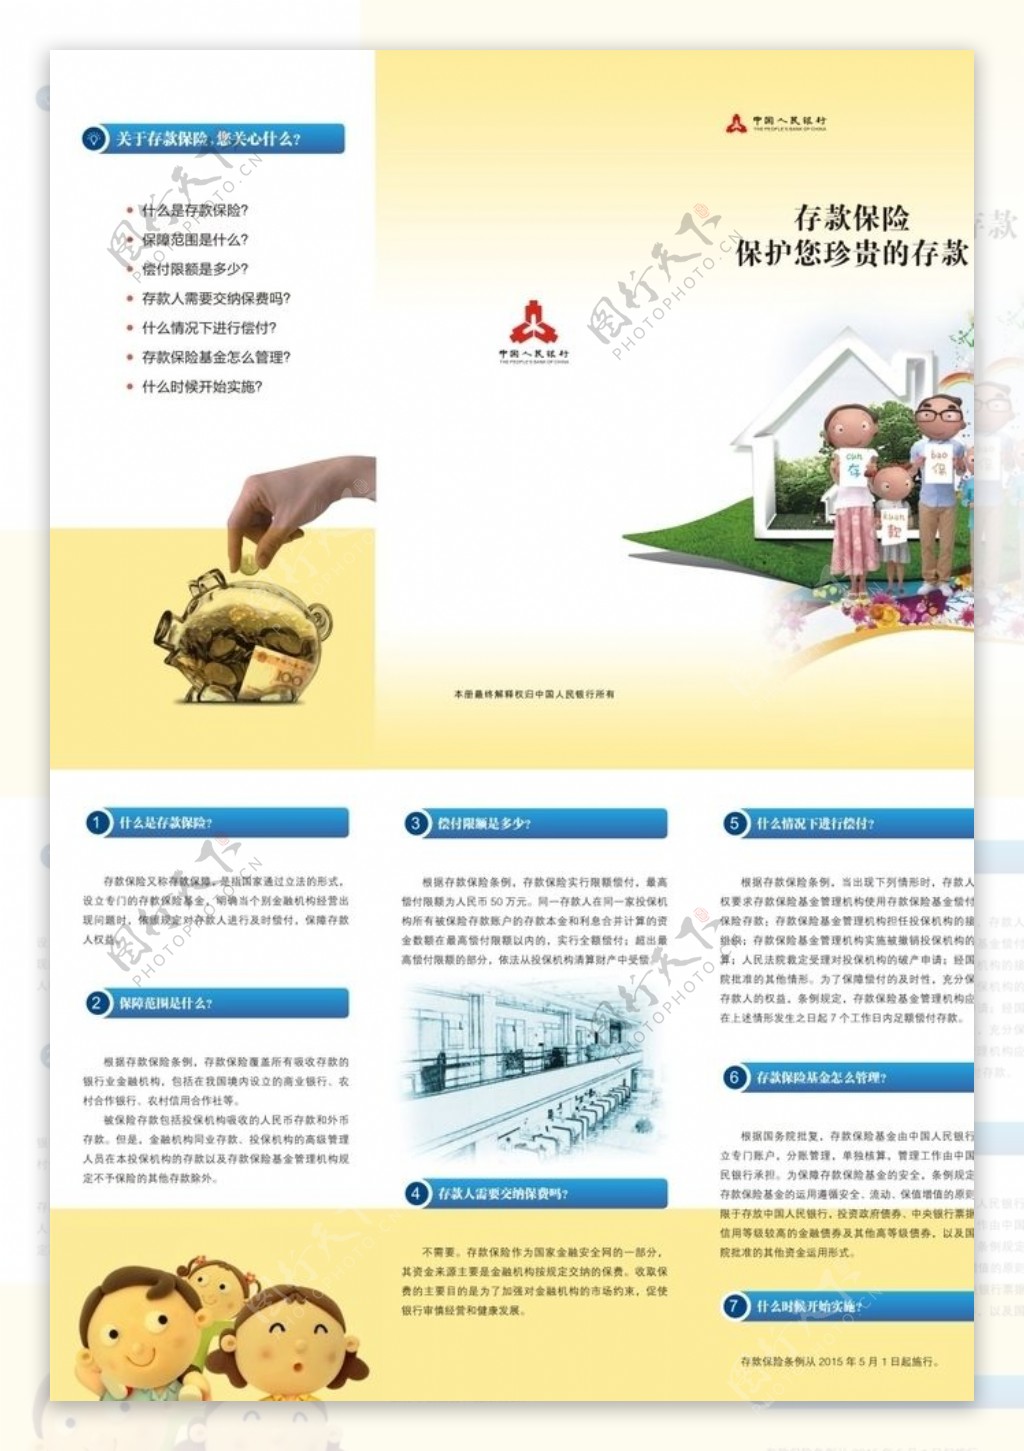 中国人民银行存款保险折页图片